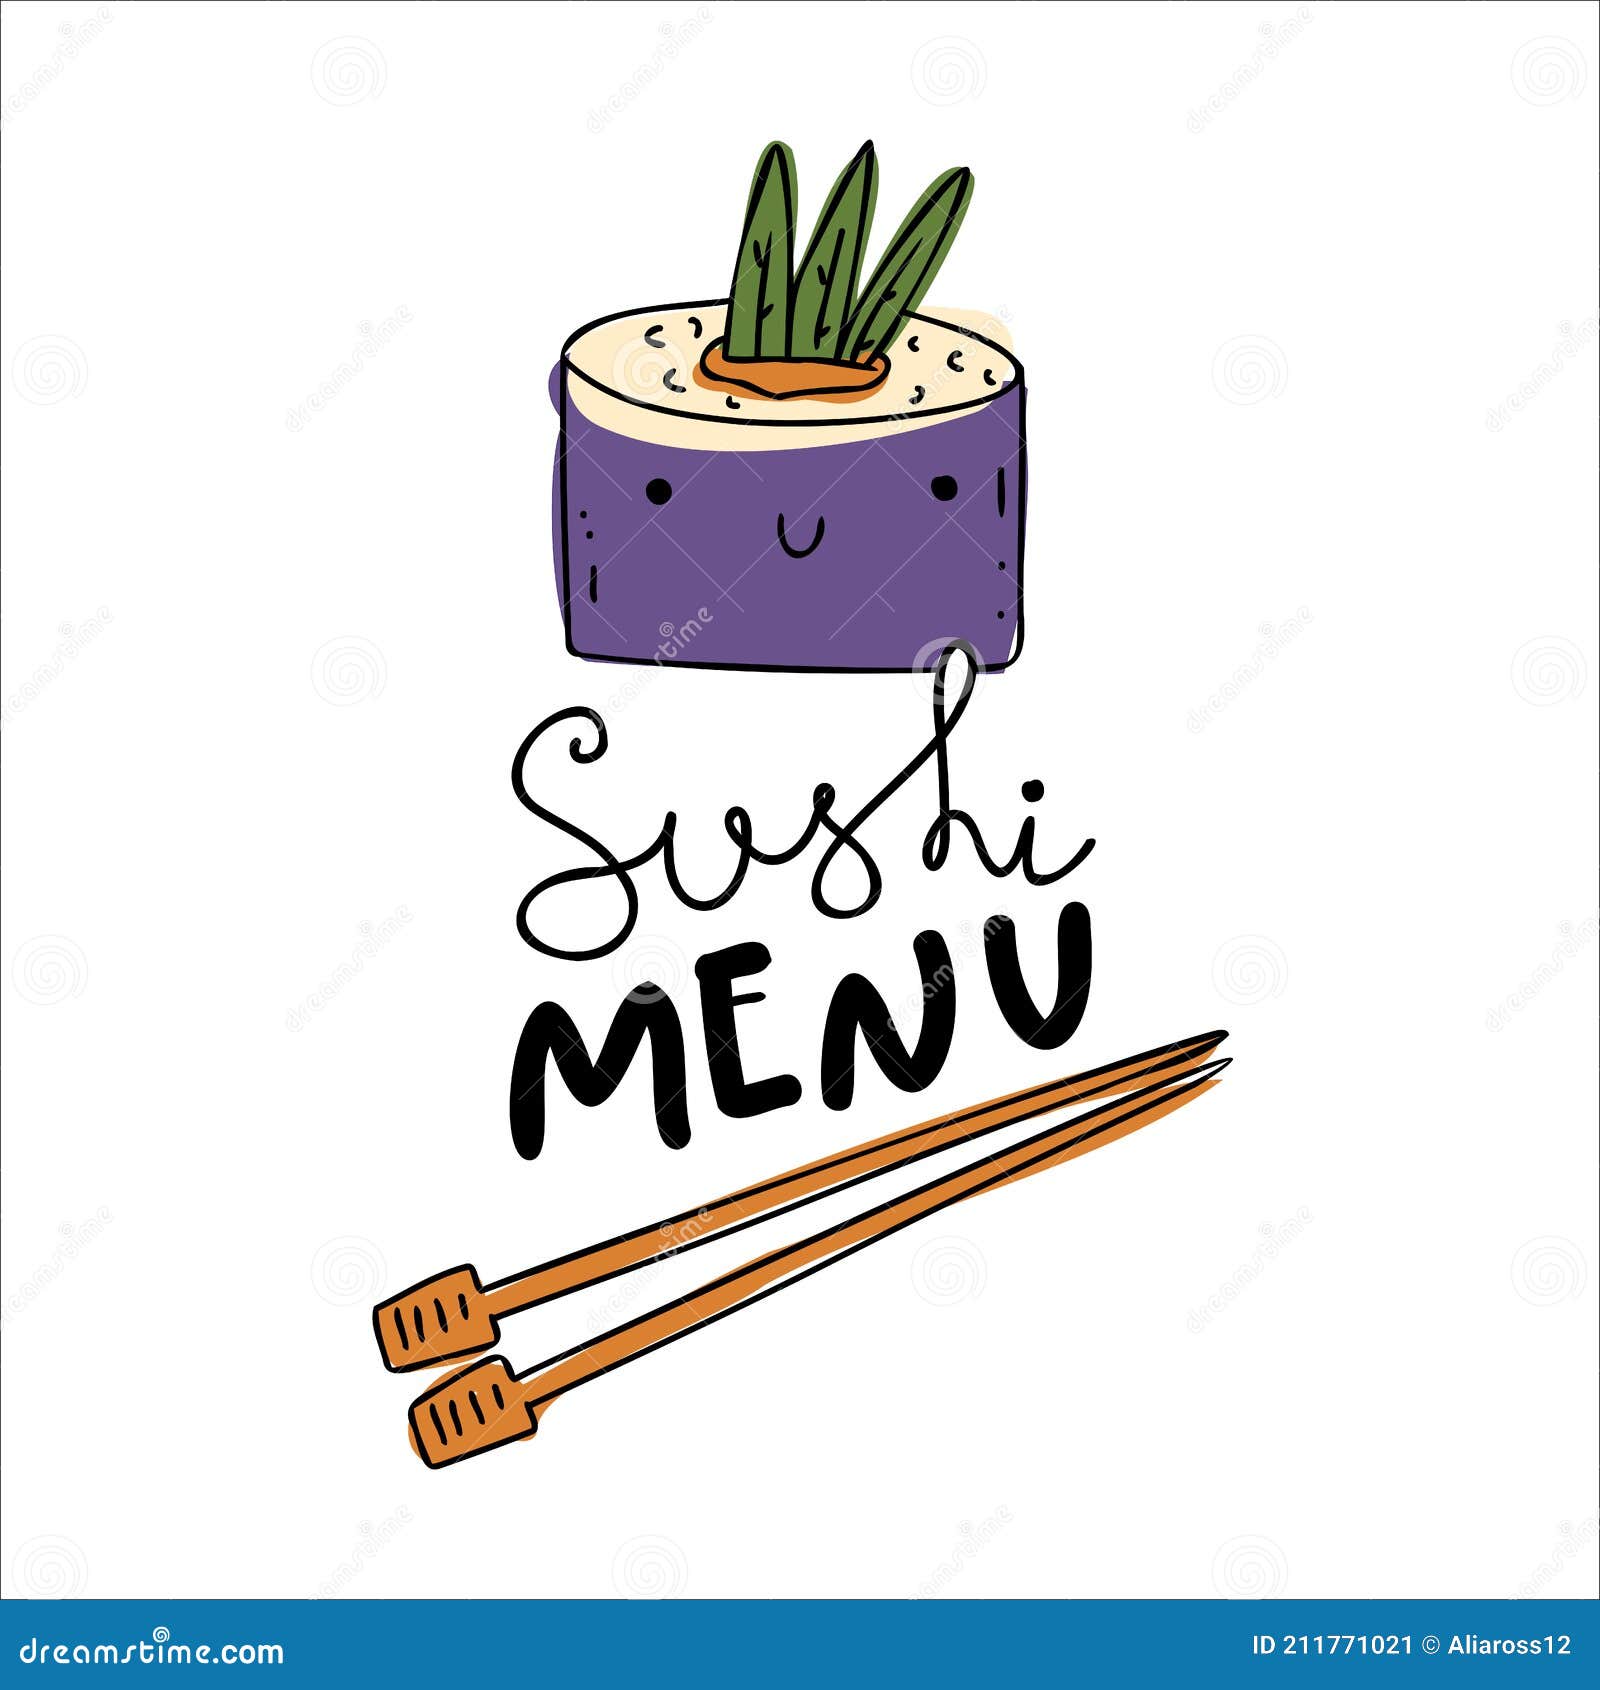 Bạn yêu thích Sushi? Hãy thưởng thức thực đơn Sushi đa dạng và hấp dẫn của chúng tôi! Với các loại nguyên liệu tươi ngon và sự kết hợp tuyệt vời, các món sushi của chúng tôi không chỉ ngon miệng mà còn đẹp mắt. 